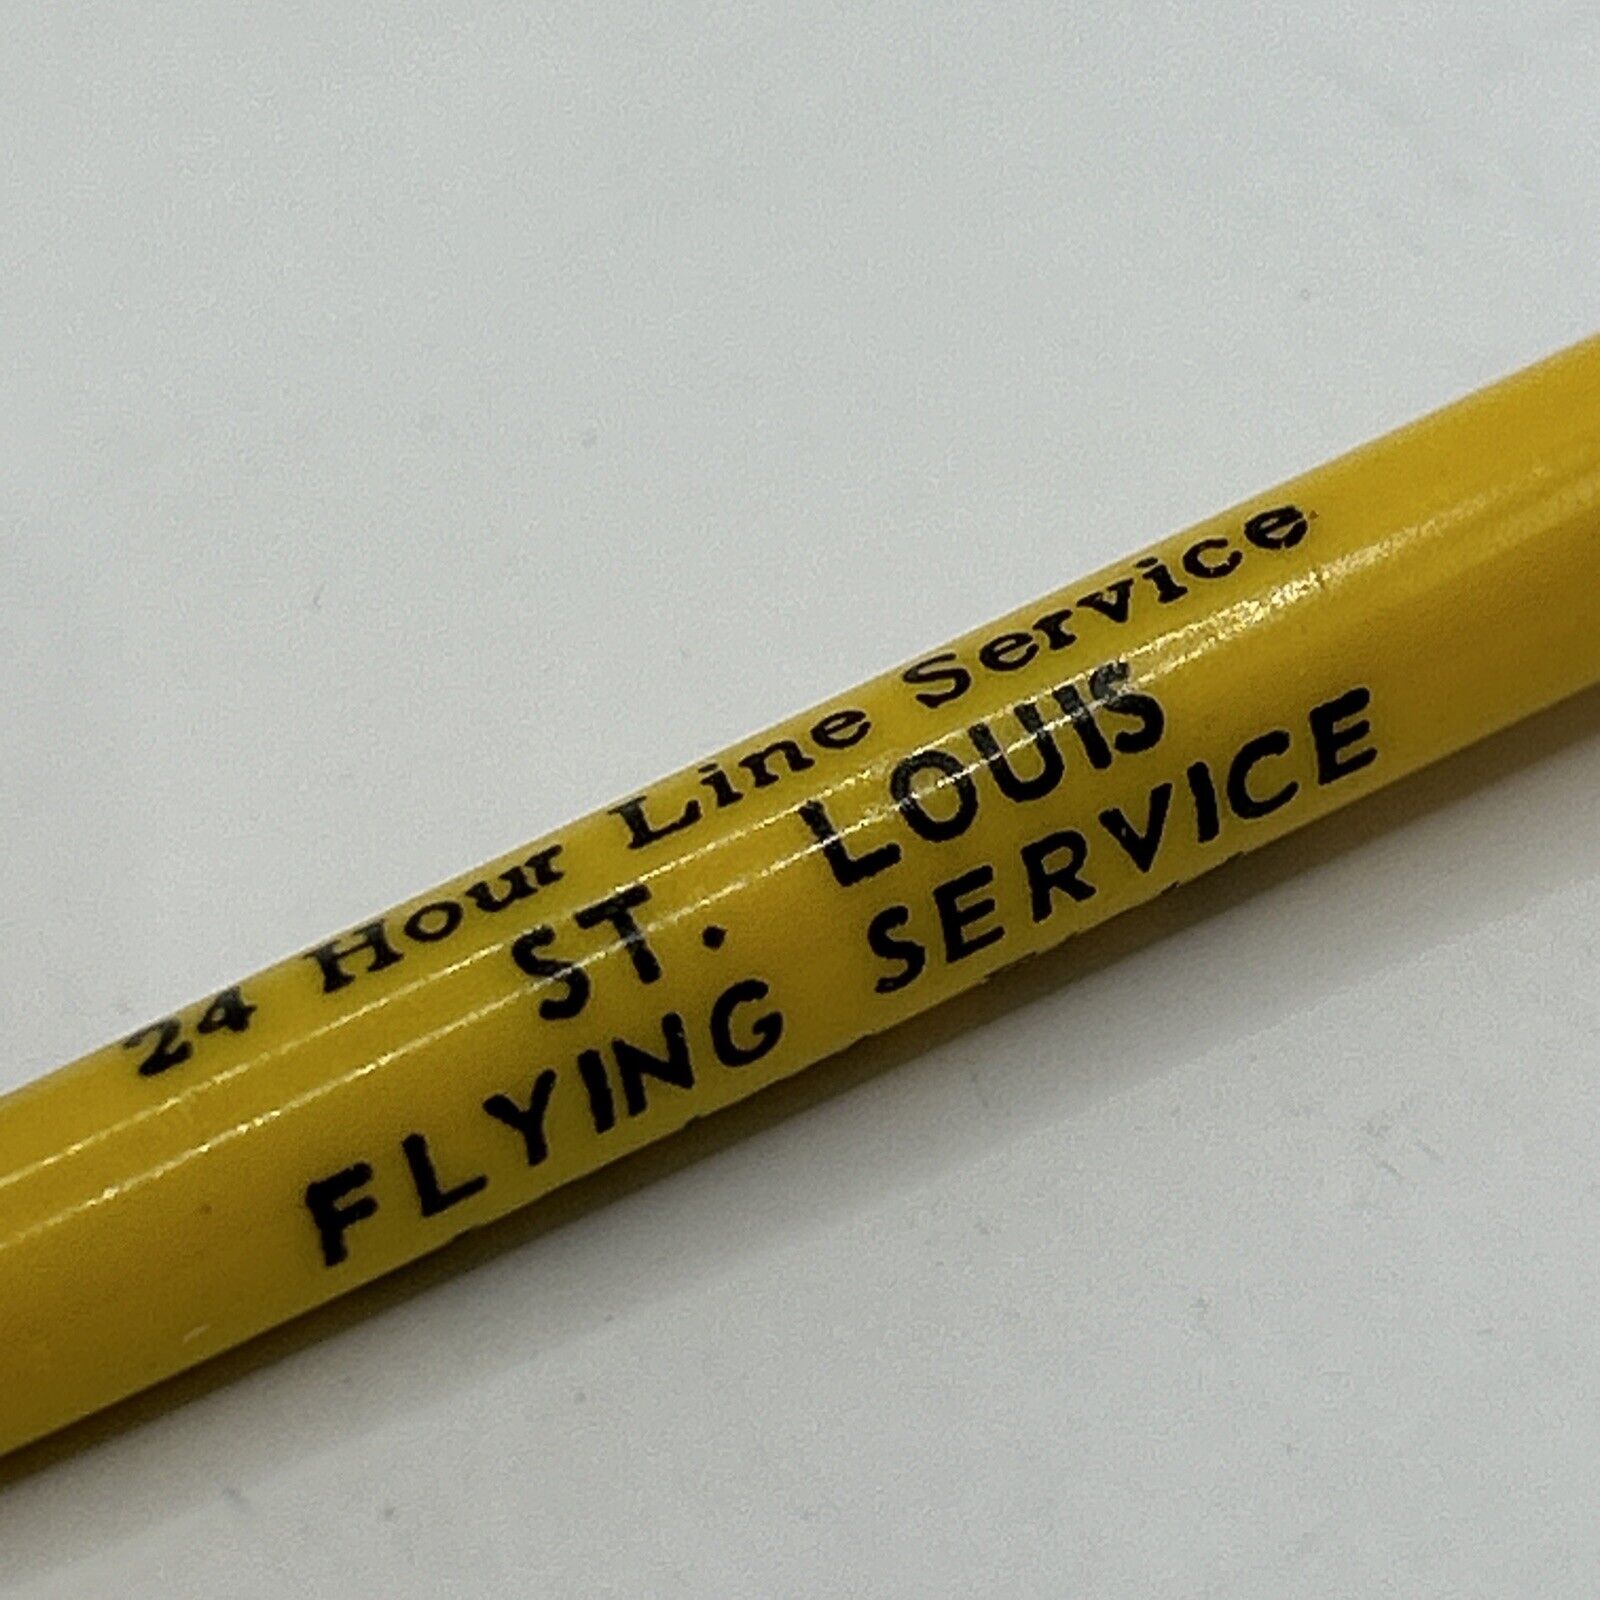 VTG c1950s Everglide Ballpoint Pen St. Louis Flying Service Lambert Field